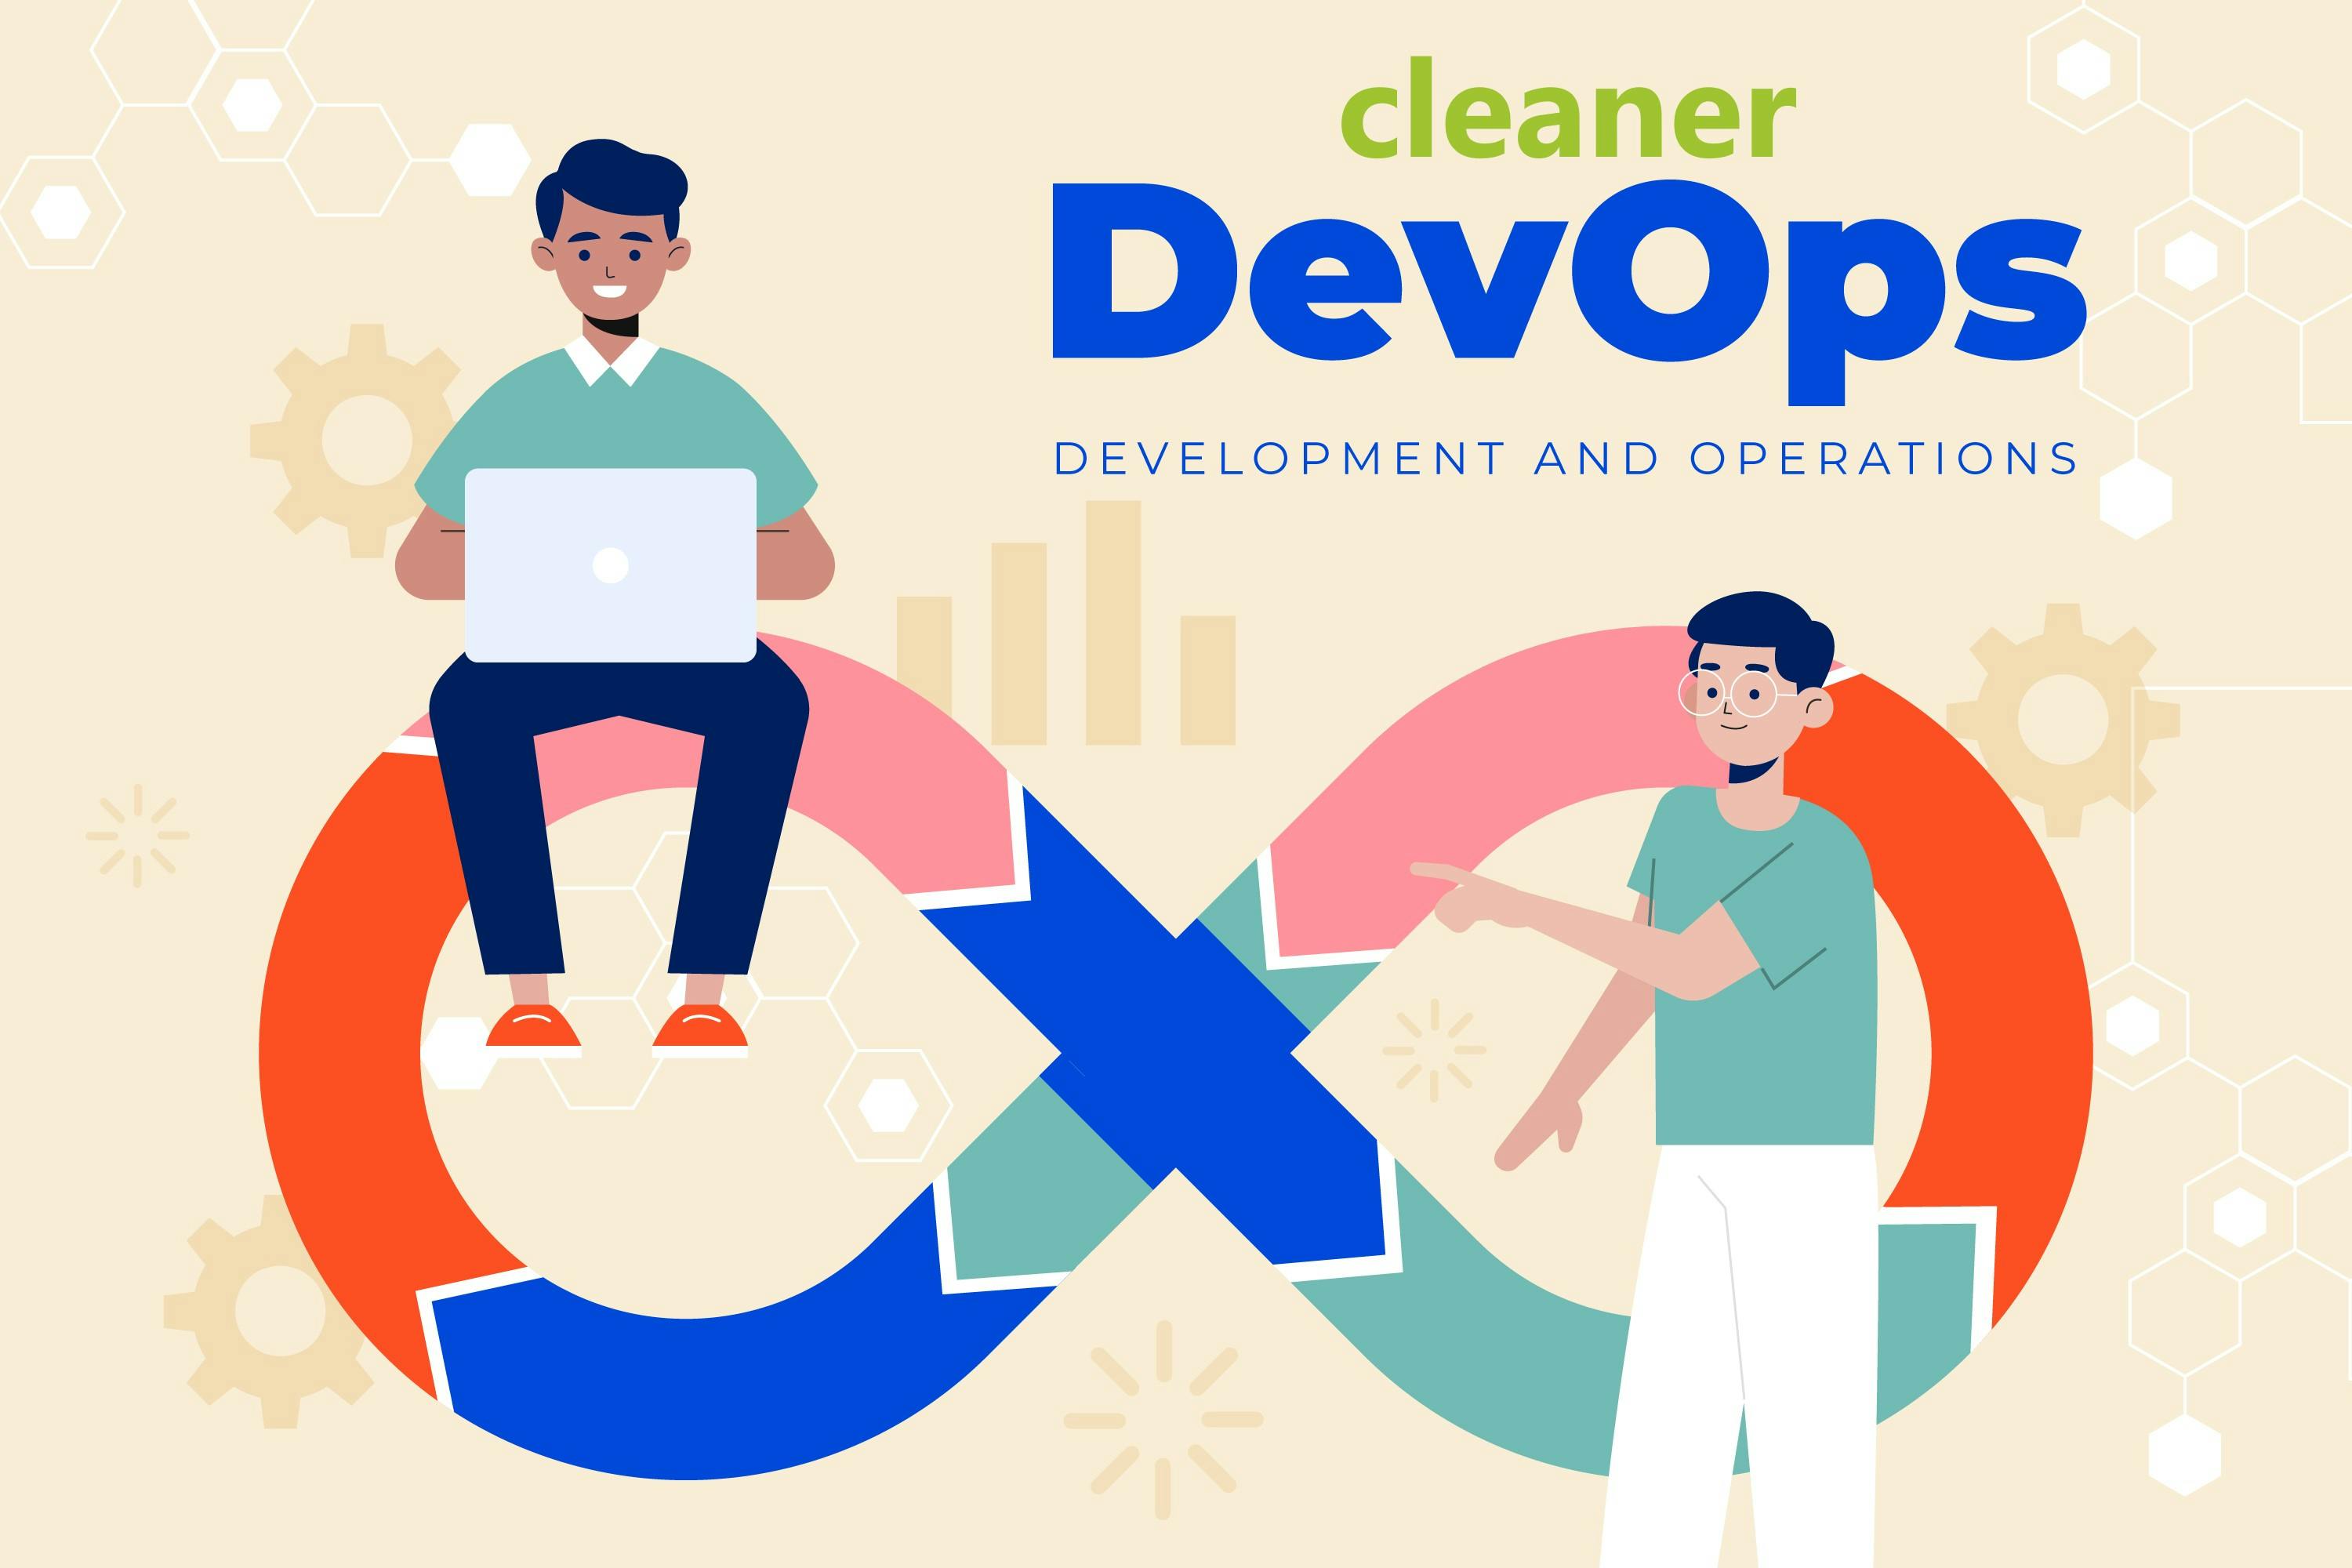 Clipart über Cleaner DevOps welches das Unendlichkeitssymbol mit zwei Personen abbildet.